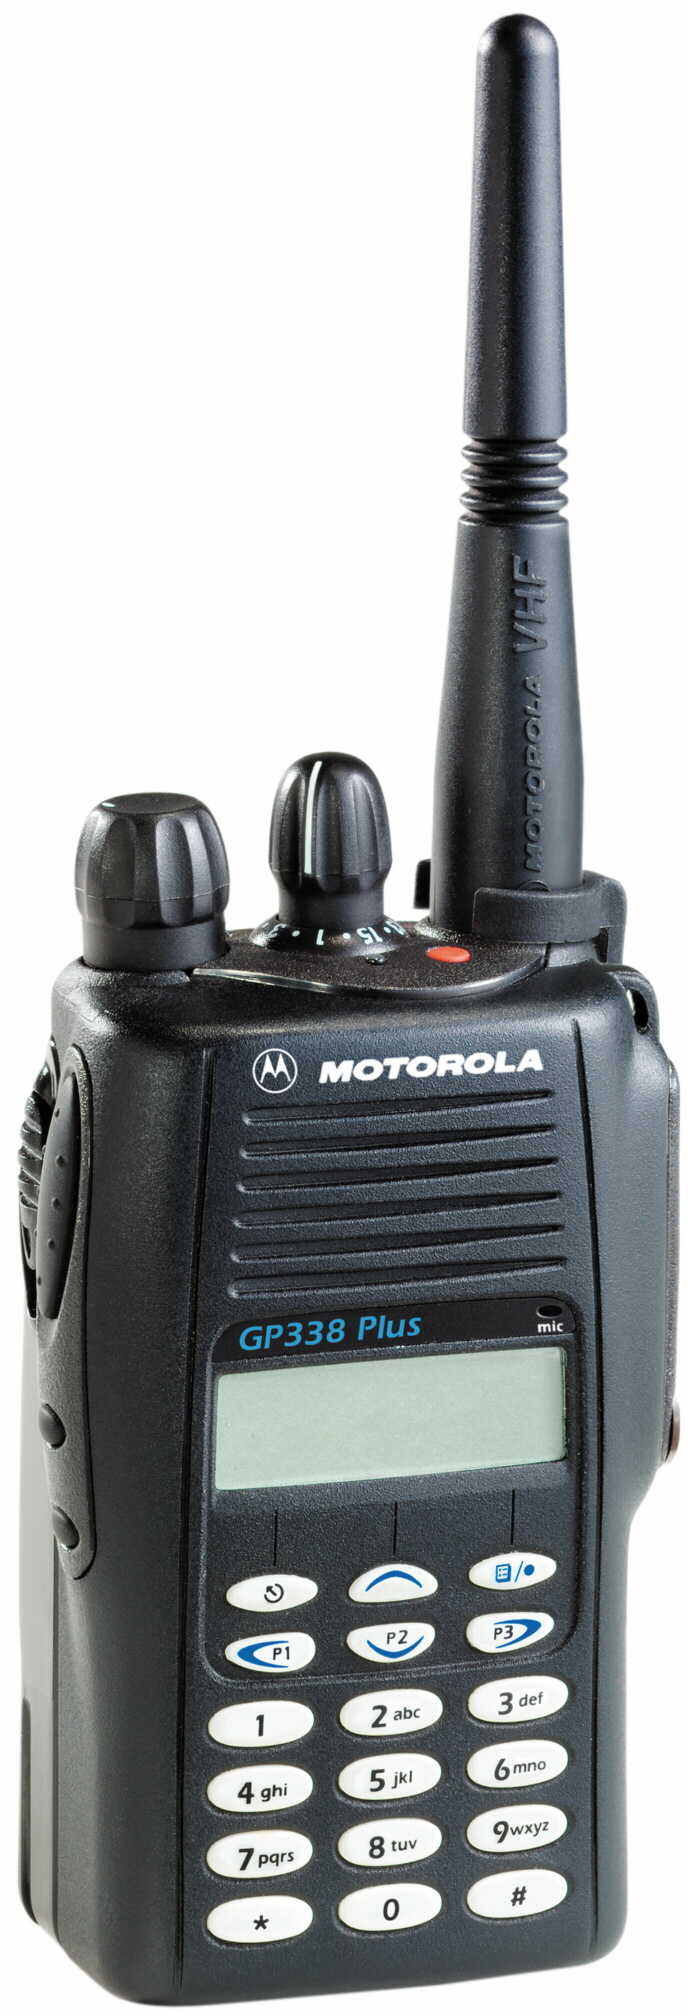 Motorola GP328 Plus Walkie Talkie